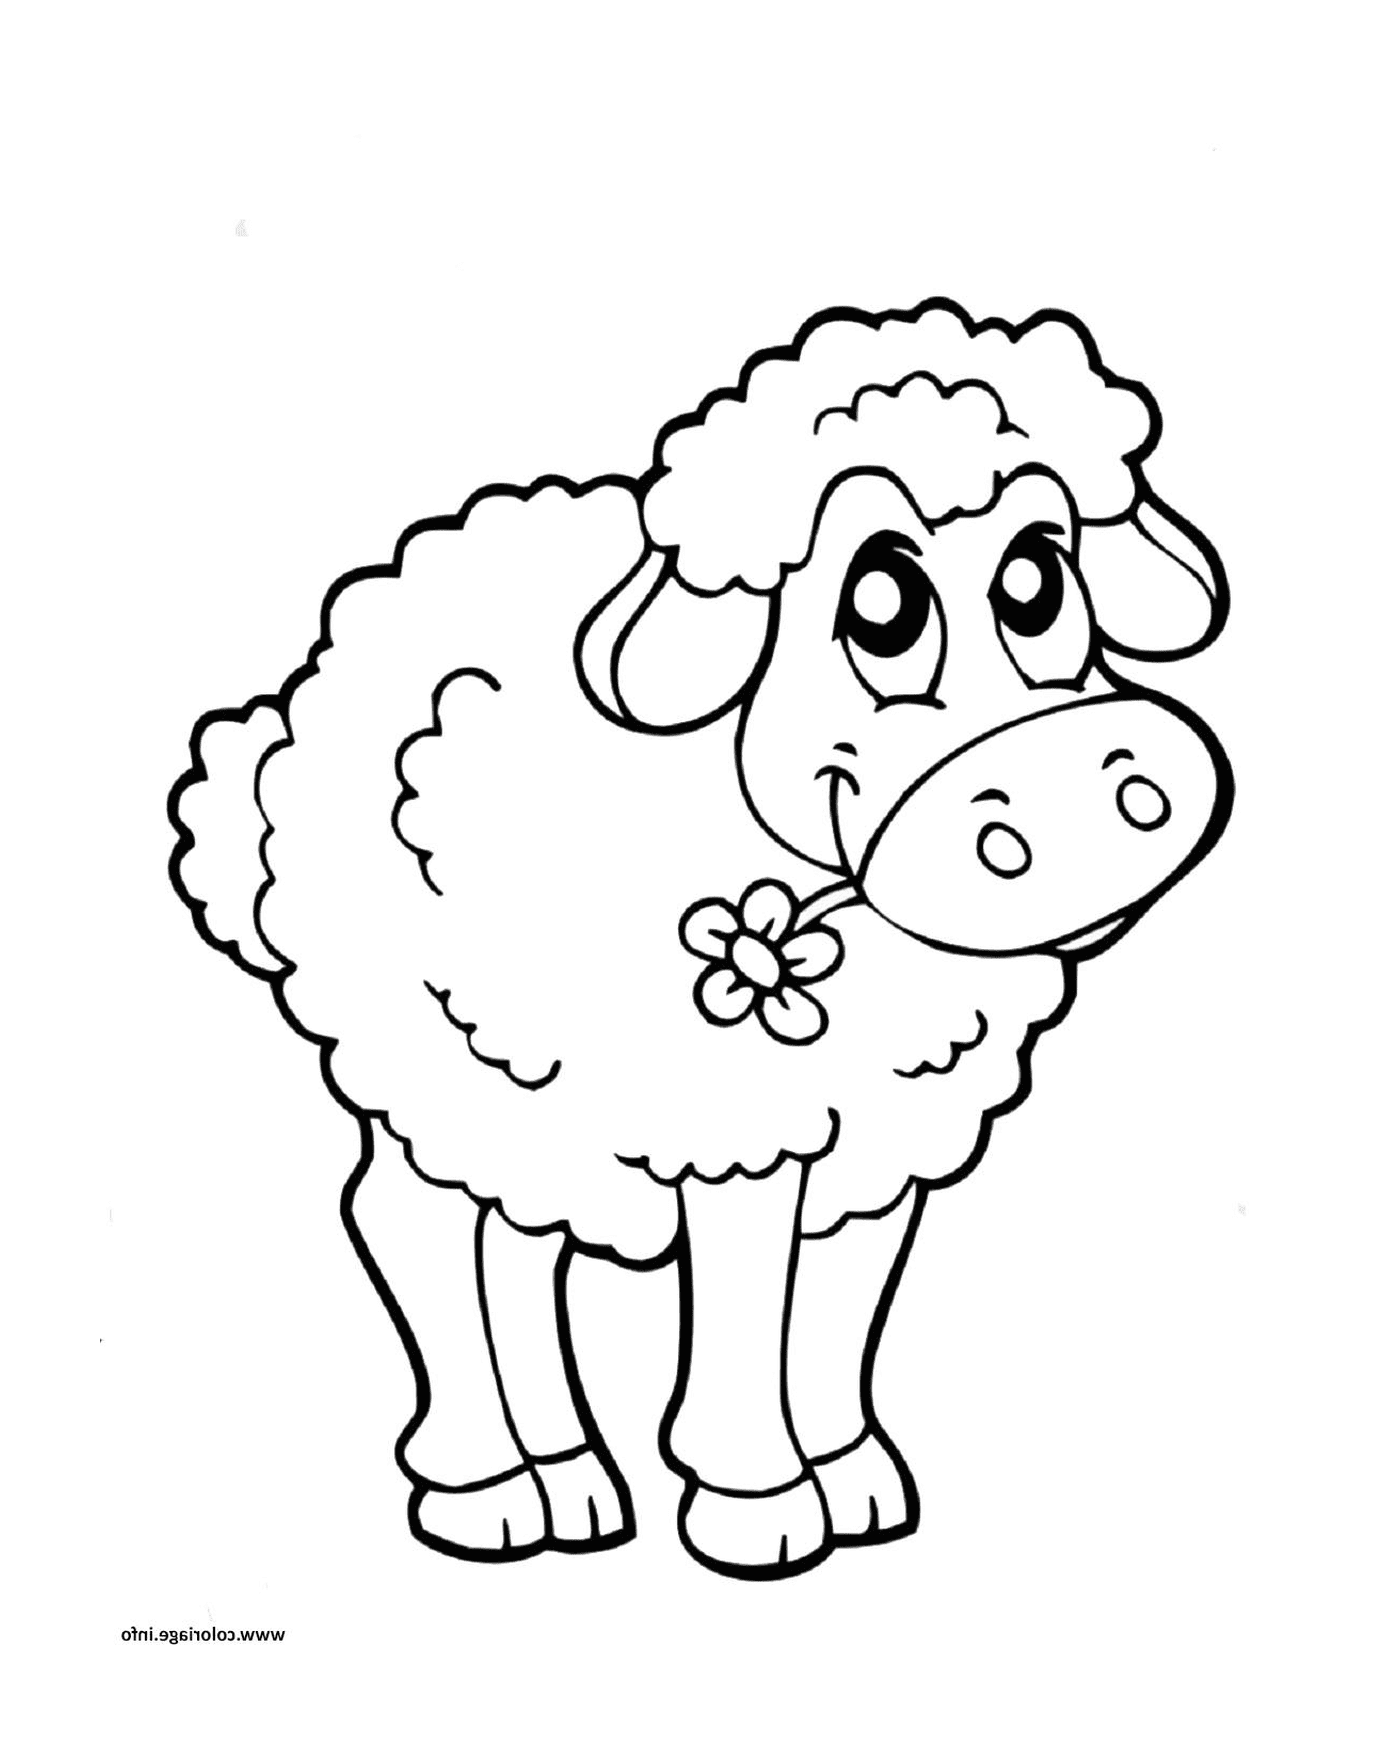  Sheep child, easy to appreciate 